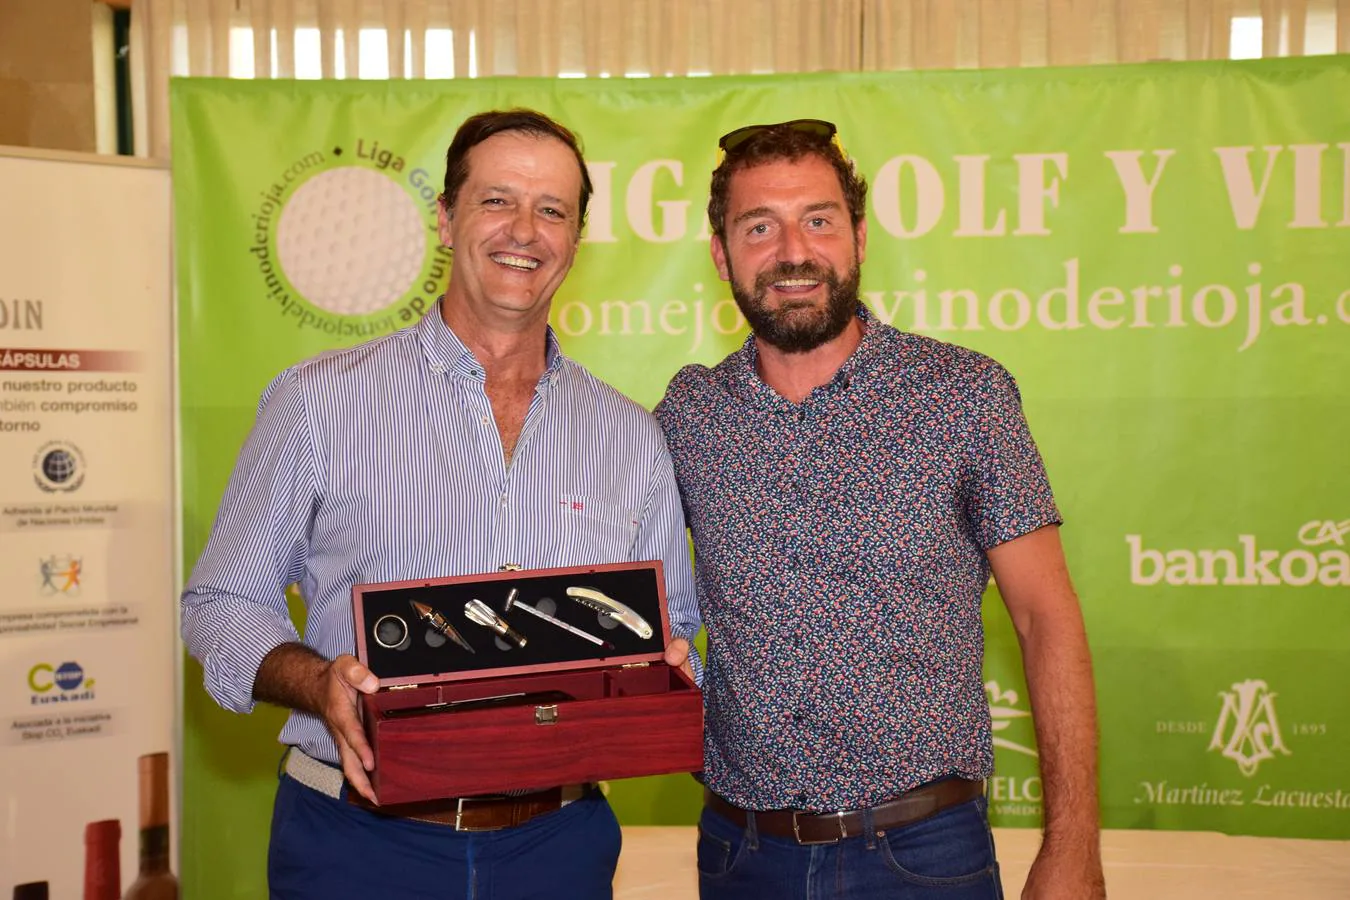 Entrega de premios a los ganadores del Torneo Viña Ijalba, de la Liga de Golf Vino de lomejordelvinoderioja.com.